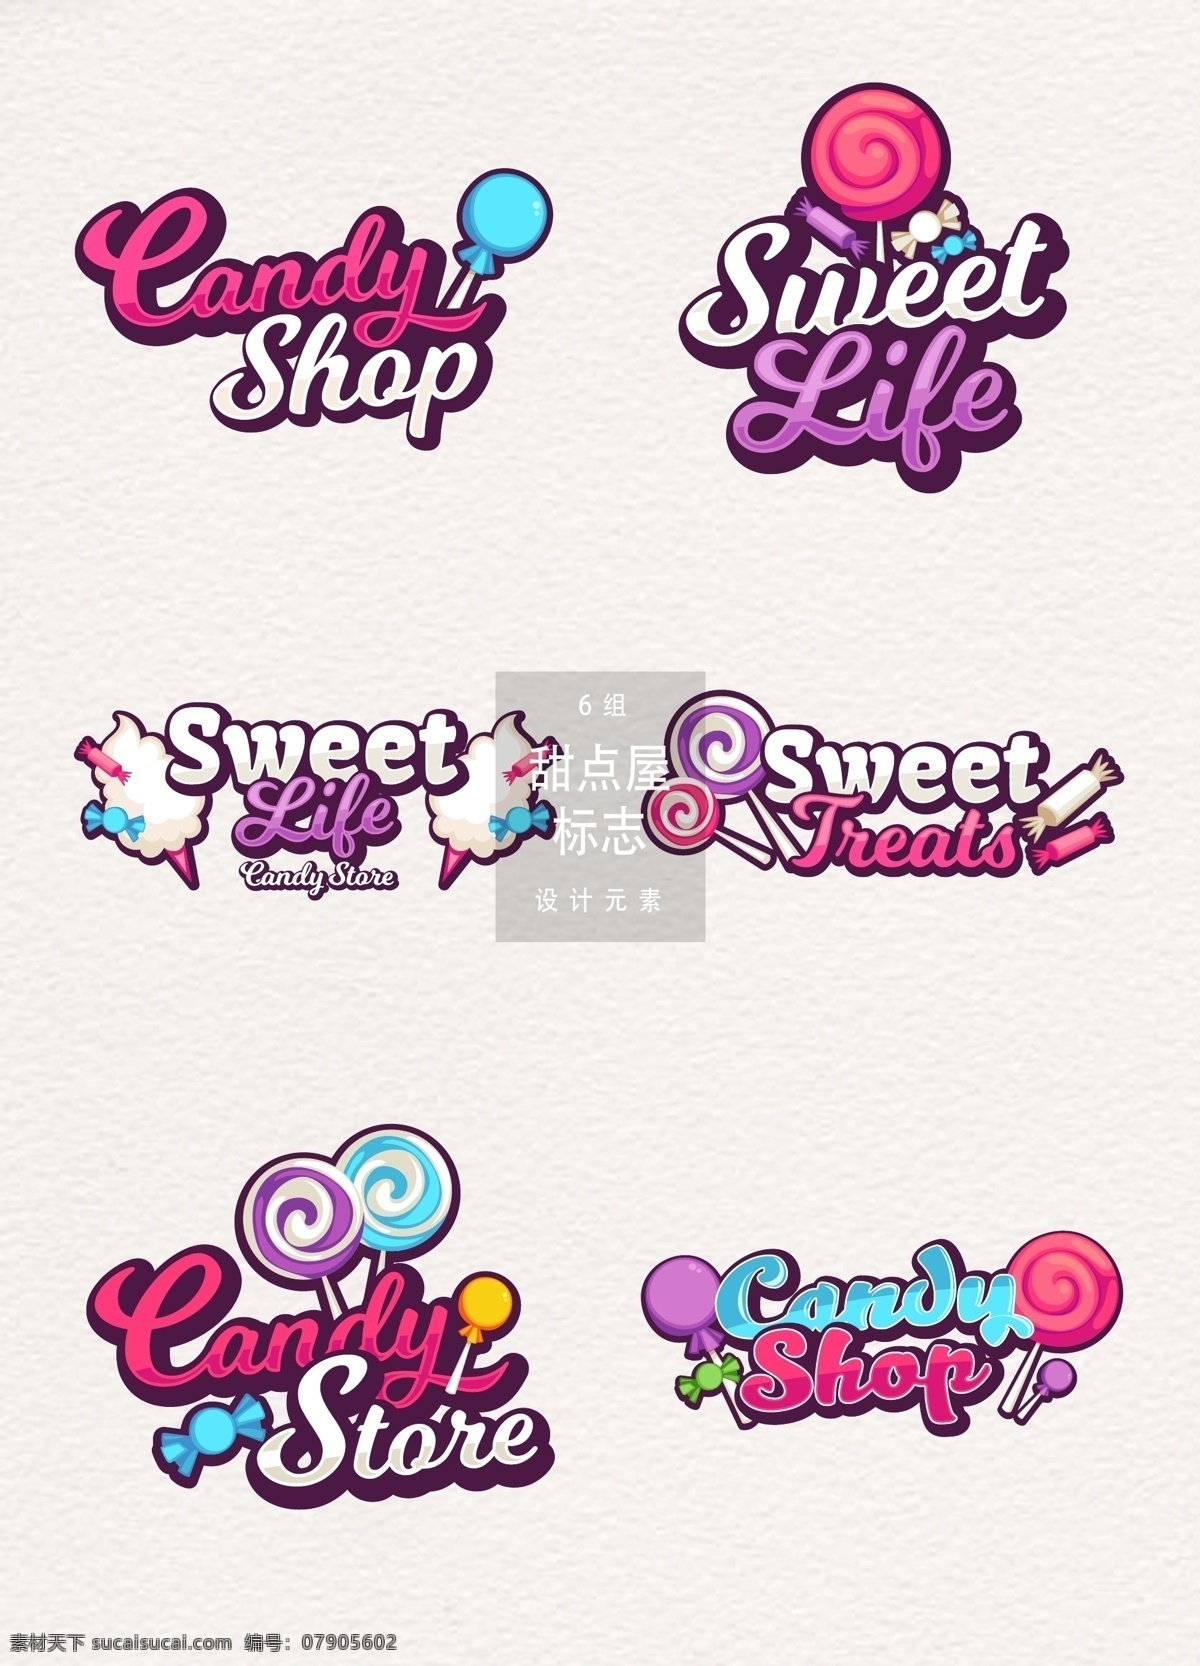 甜点 屋 标志 logo 图标 冰淇淋 矢量素材 甜品 棒棒糖 手绘冰淇淋 冰淇淋图标 图标设计 甜品logo 糖果